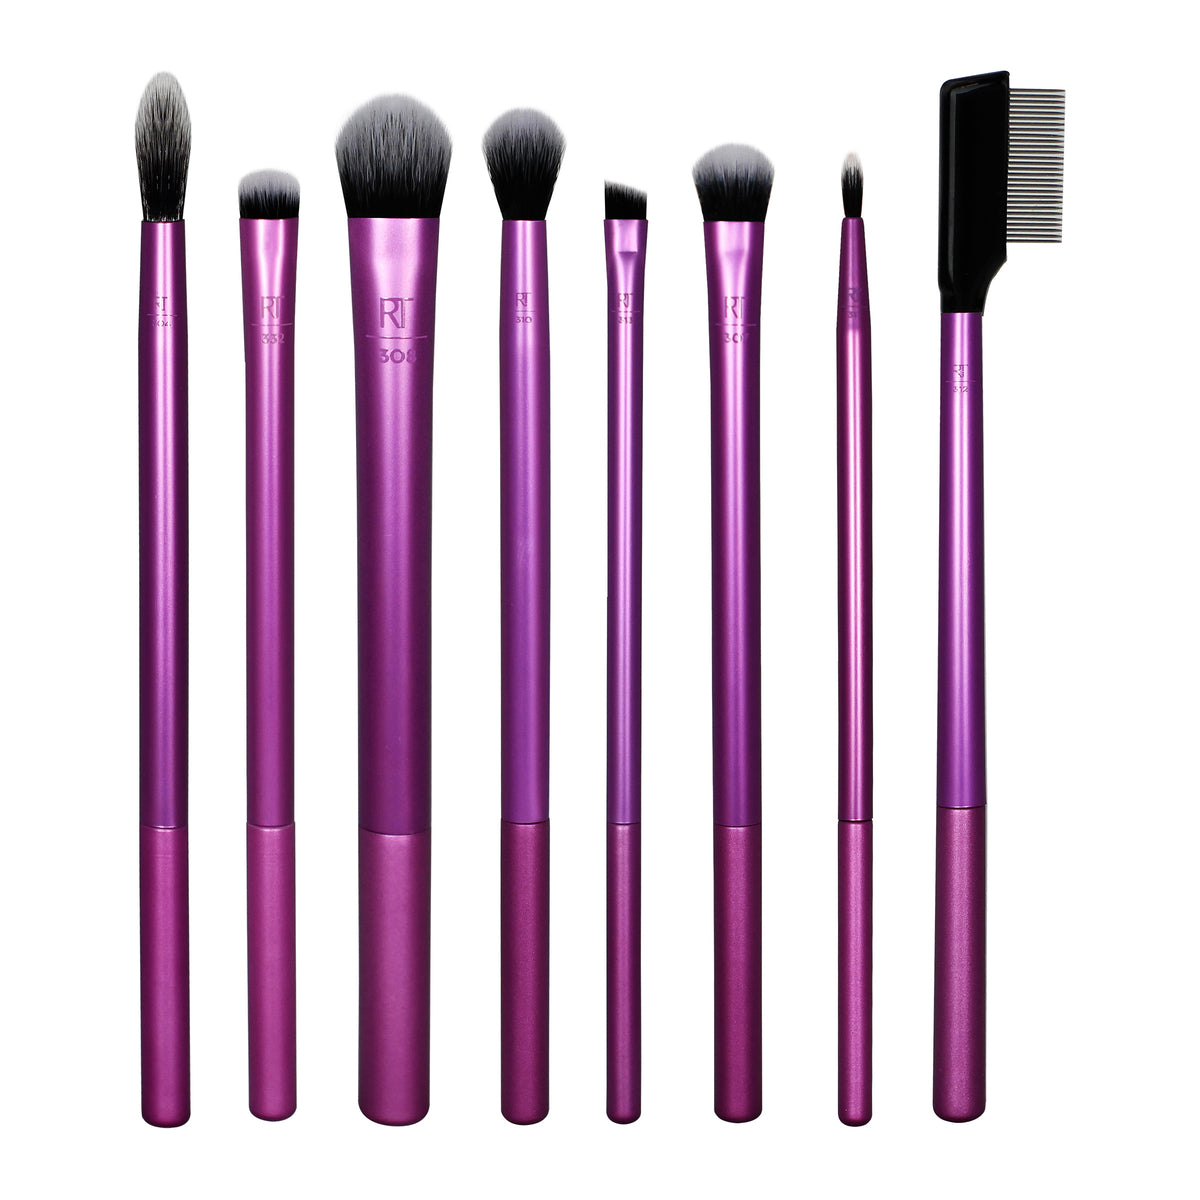 Ecotools Fresh Face Everyday Makeup Brush Set - 5pc : Target